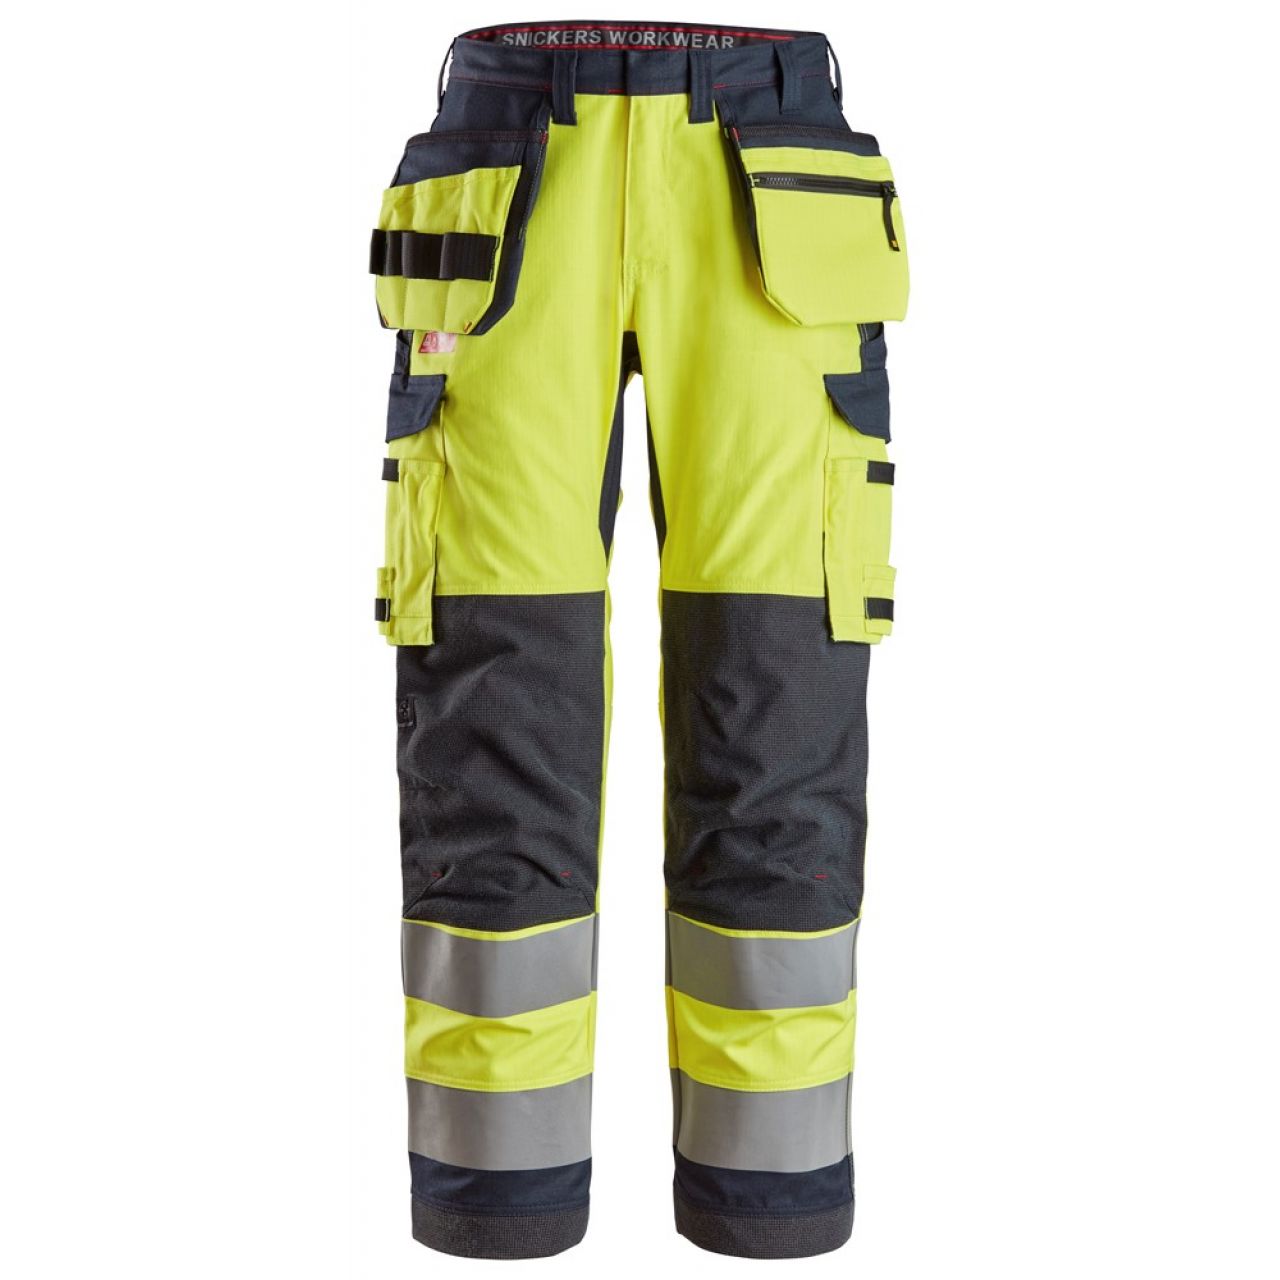 6261 Pantalones largos de trabajo de alta visibilidad clase 2 con bolsillos flotantes simétricos ProtecWork amarillo-azul marino talla 56